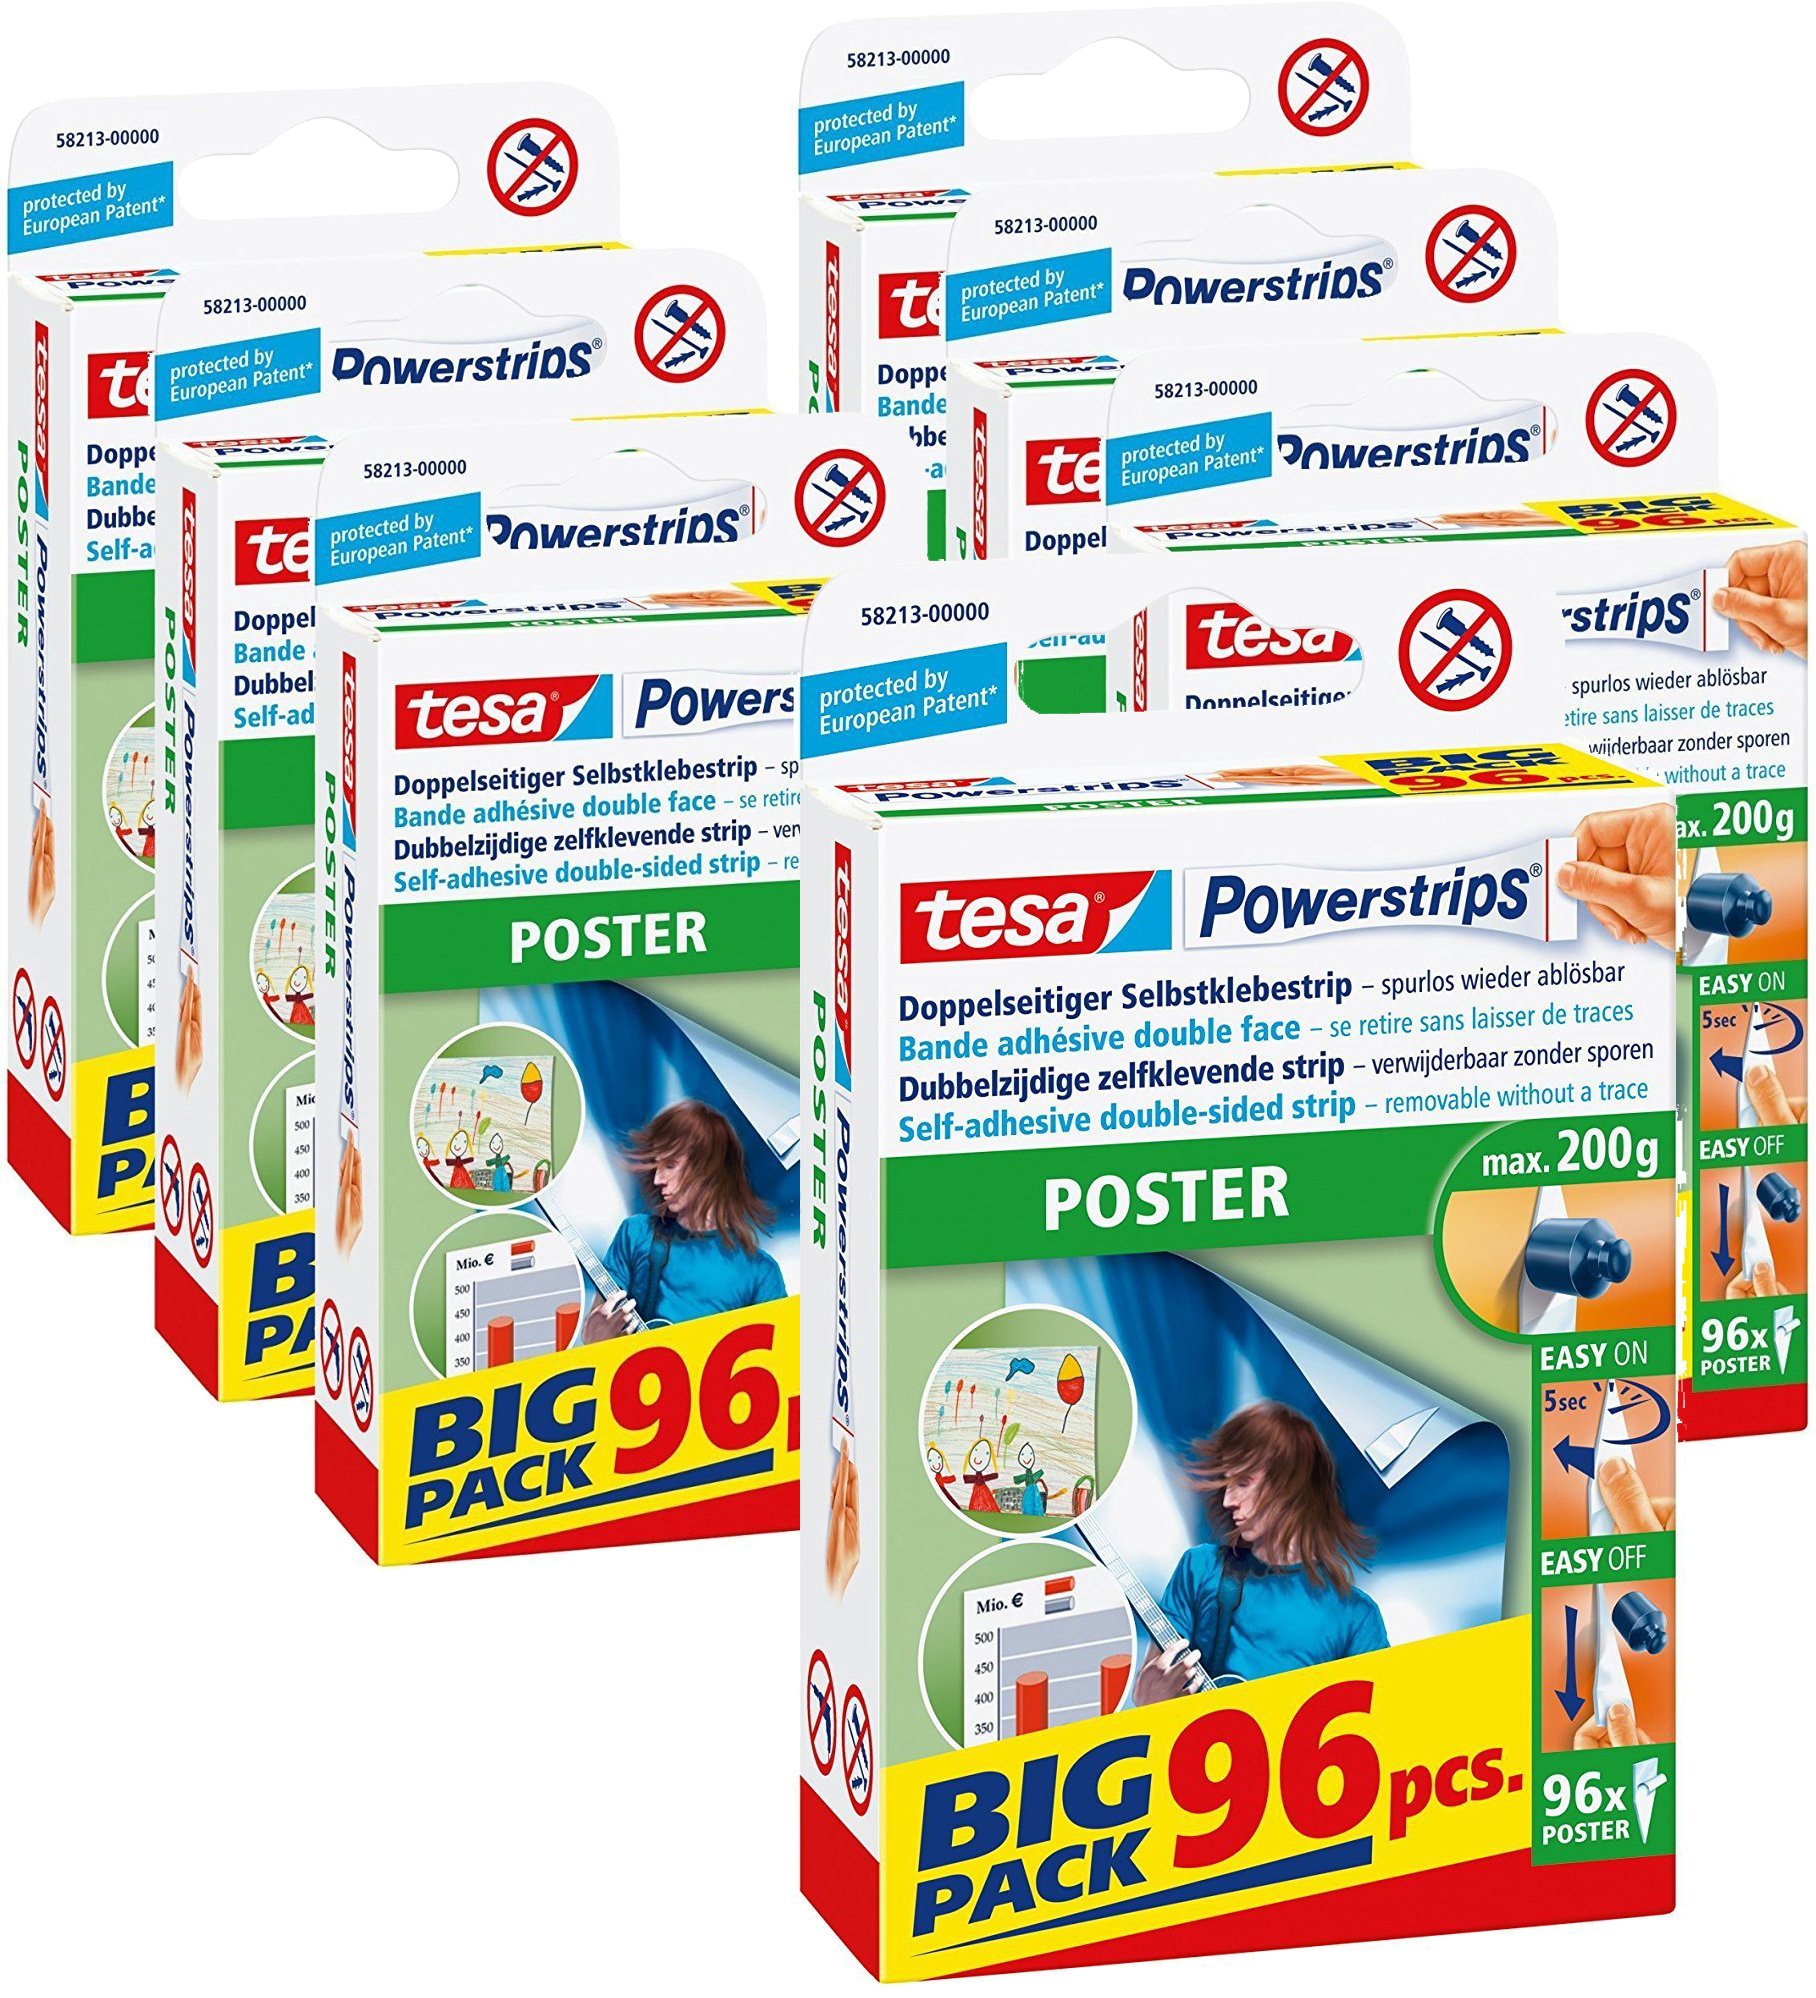 tesa Powerstrips POSTER/Doppelseitige Klebestreifen für Poster, Plakate und leichte Schilder bis 200g - wieder ablösbar und mehrfach verwendbar/Bigpack / 7 x 96 Stück (1 Vorrats - Karton)